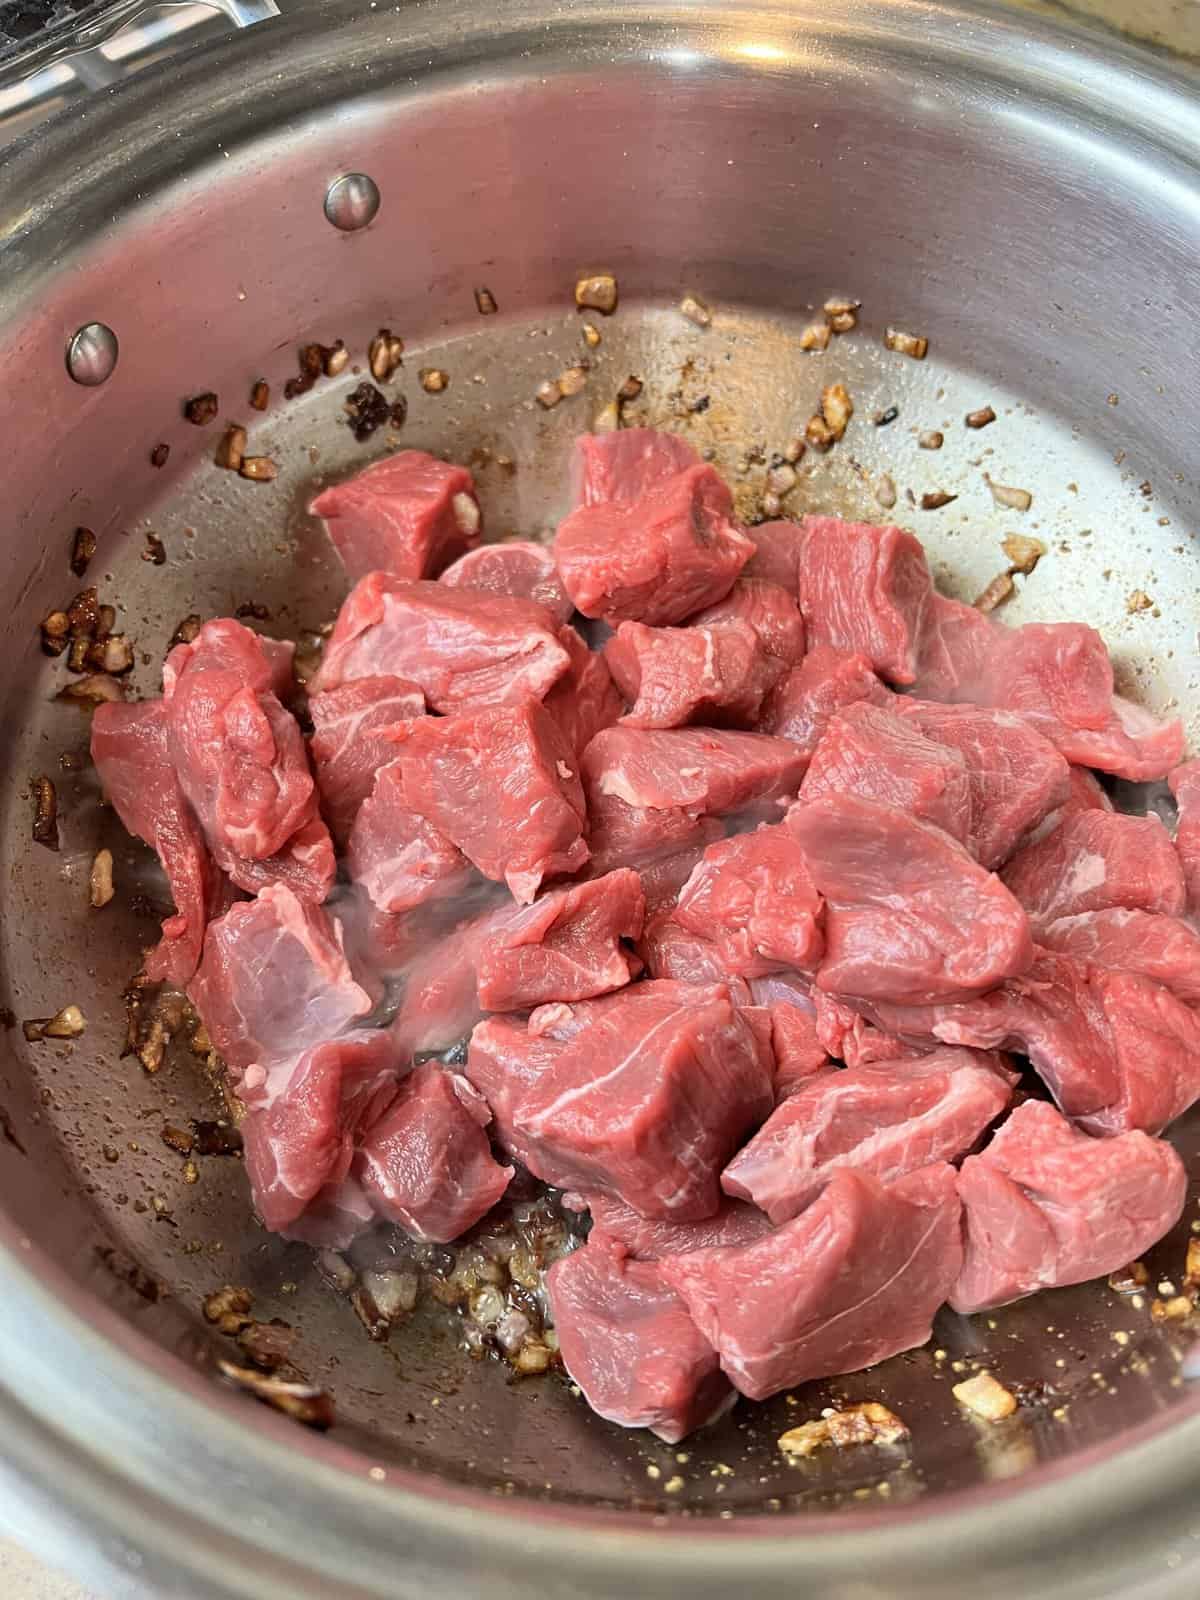 saute the meat for the karahi gosht